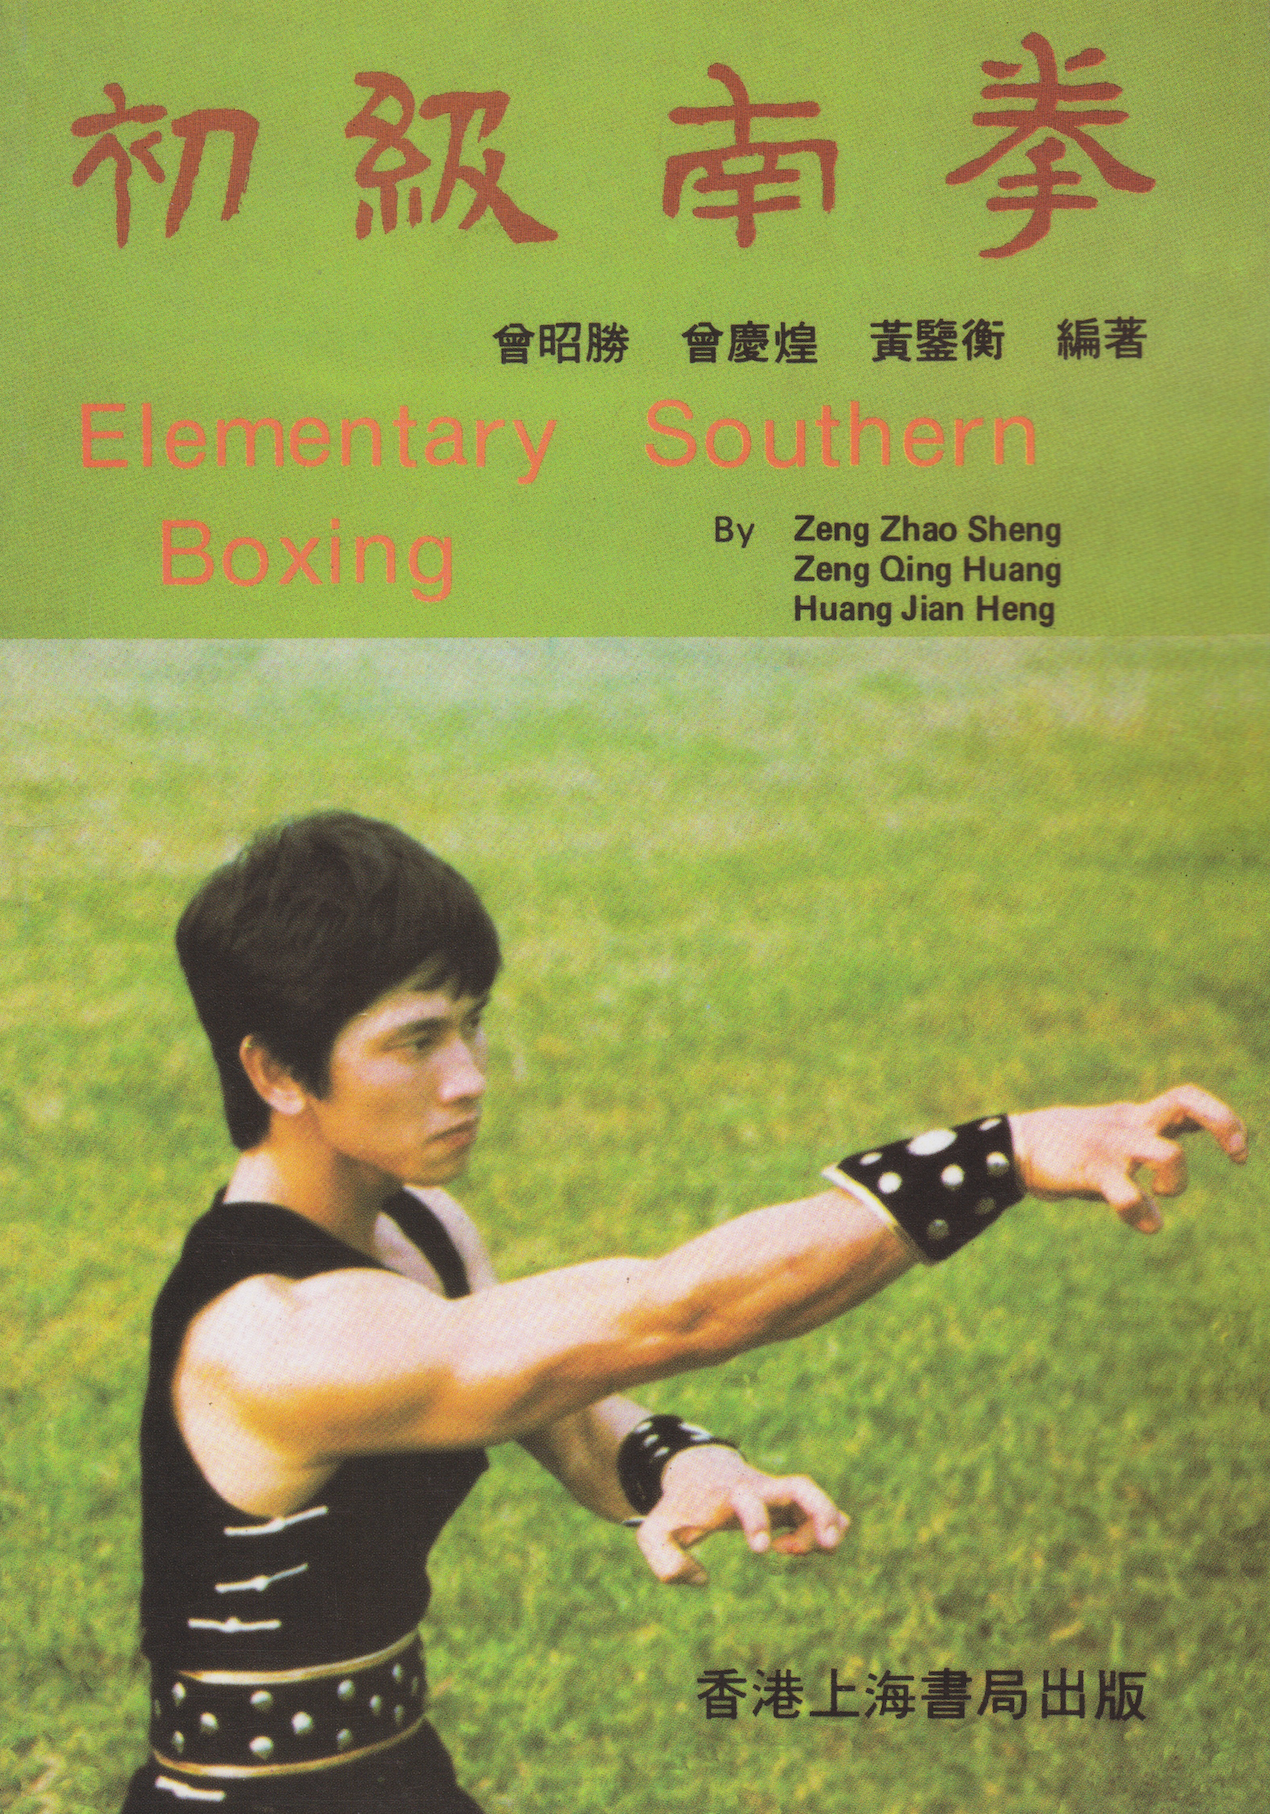 Elementary Southern Boxing Book by Zeng Zhao Sheng